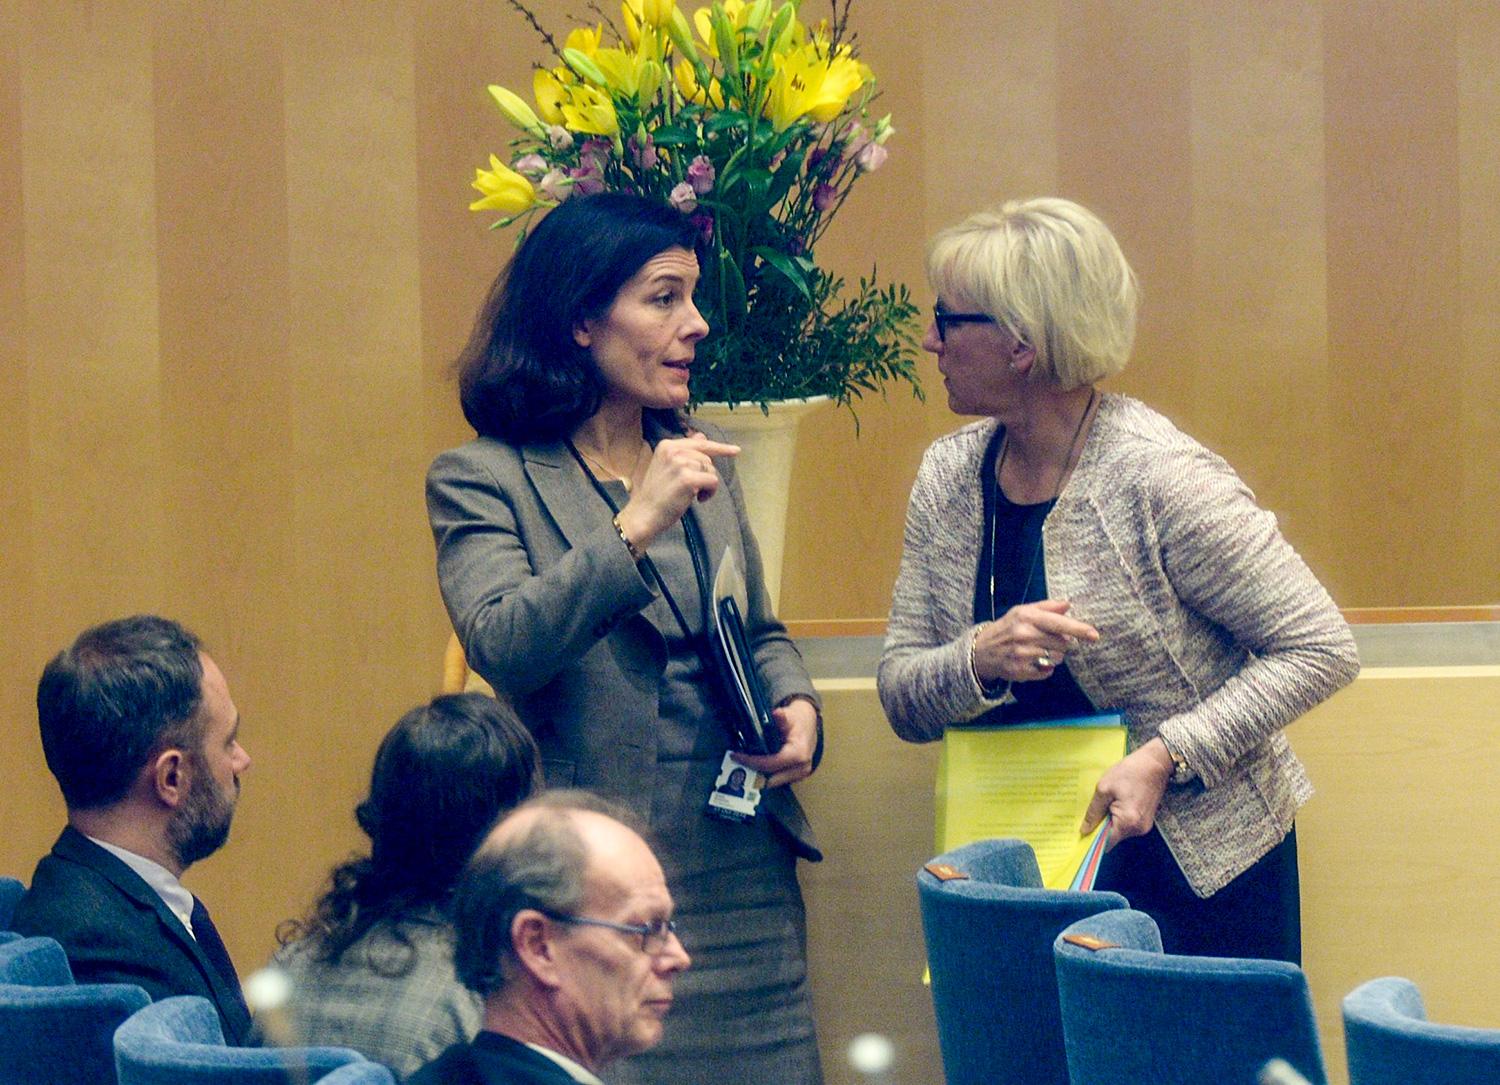 Har moderathöjdarna Karin Enström (till vänster) och Anna Kinberg Batra andra värderingar än Margot Wallström (till höger) när det gäller offentlig piskning, halshuggning och kvinnoförtryck, frågar sig Jan Guillou.